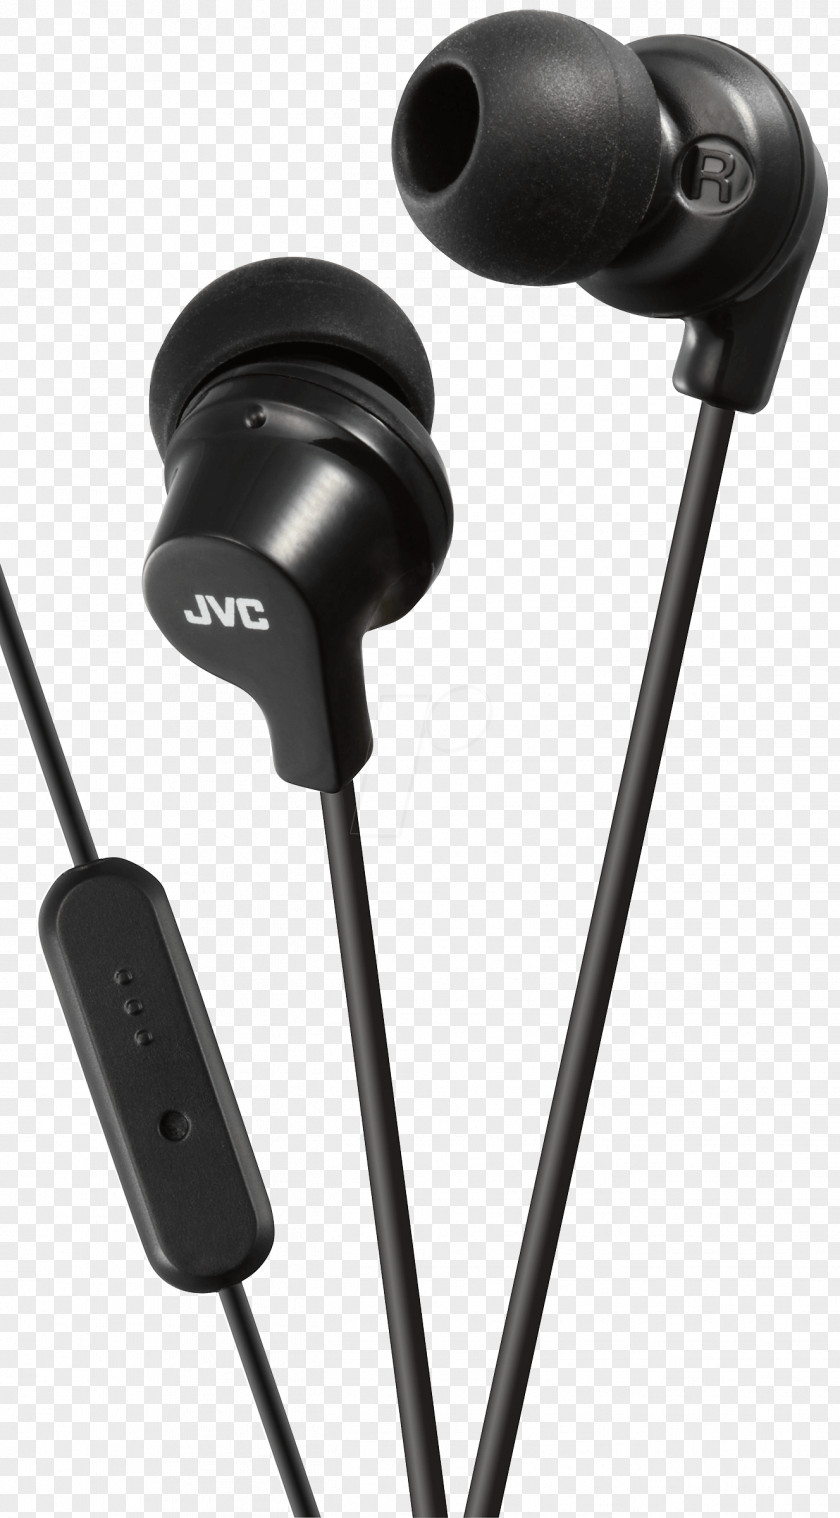 Microphone Headphones Écouteur JVC HA FX22 Headset PNG